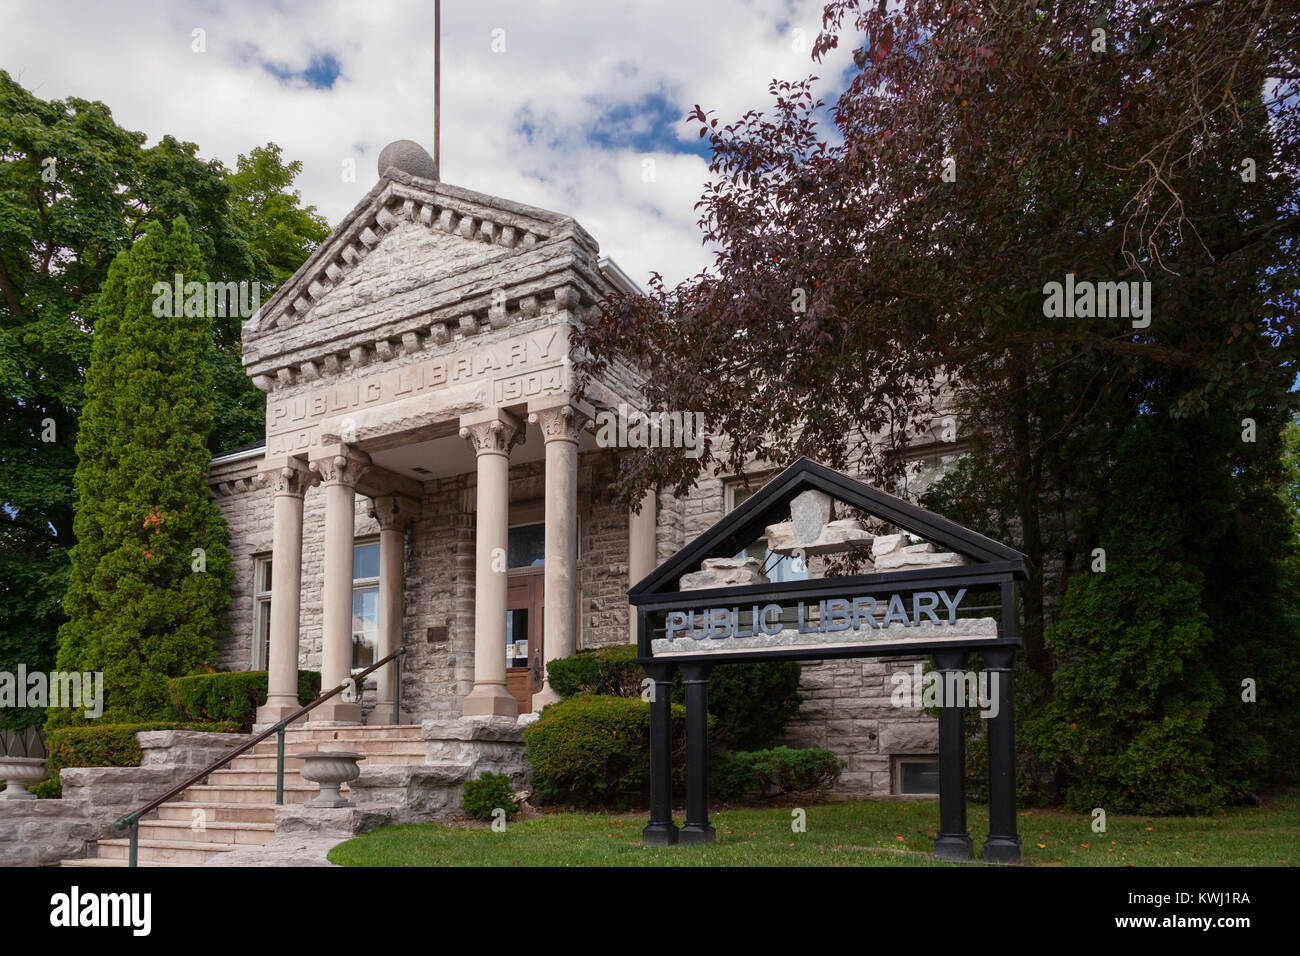 La biblioteca pública con la arquitectura neoclásica es un patrimonio inmueble en Santa María de Los Ángeles, Ontario, Canadá. Foto de stock